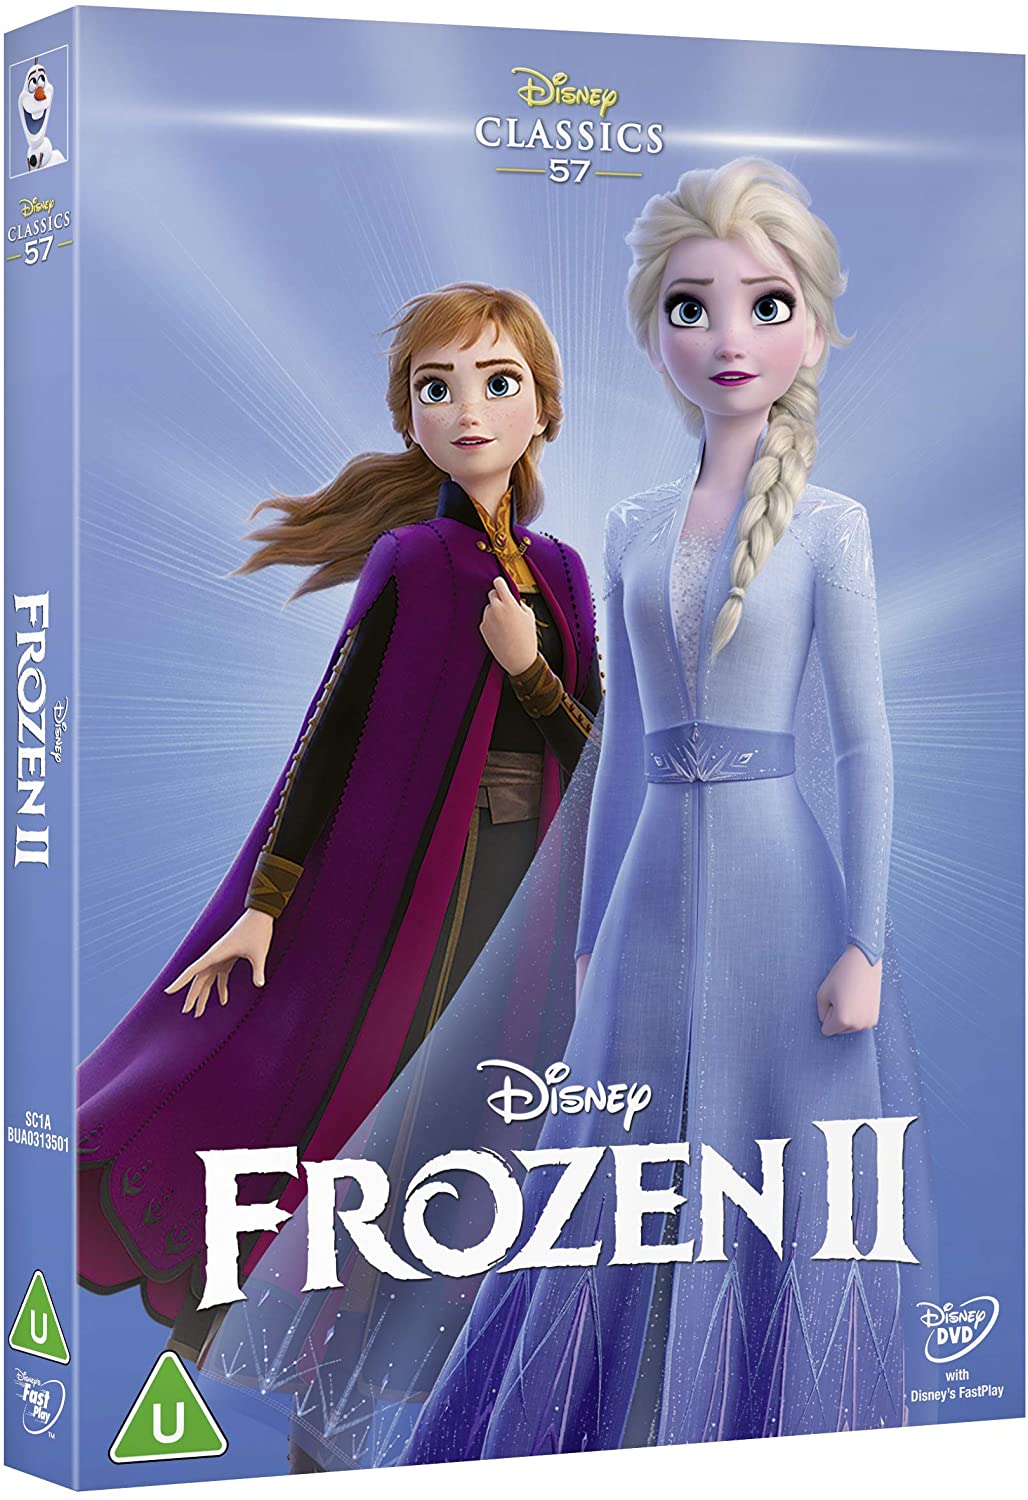 Disney's Frozen 2 - Family/Musical [DVD]